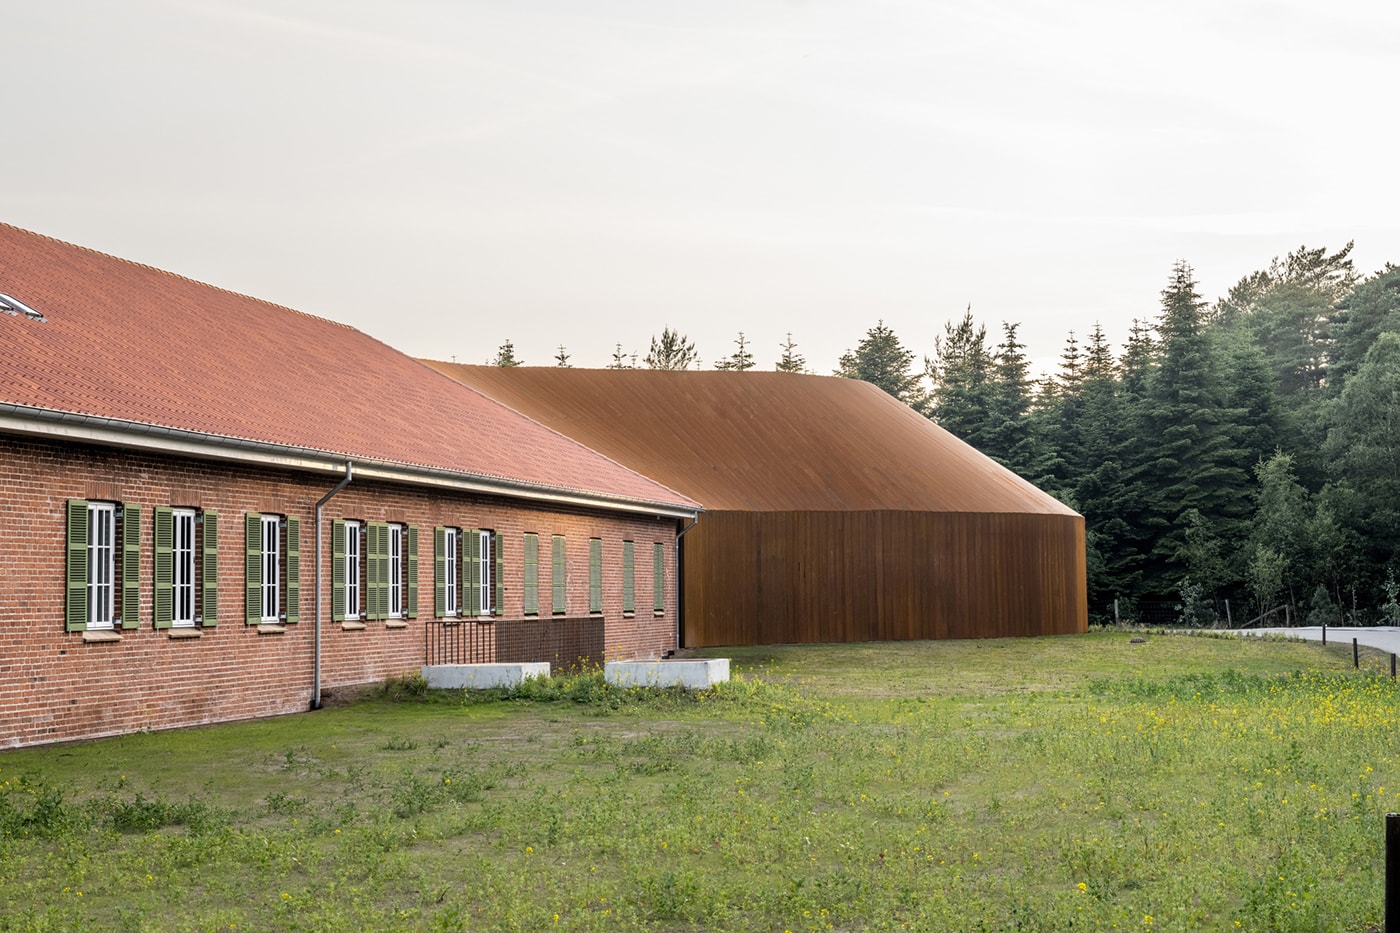 BIG Combines Corten Steel and Red Brick for Danish Refugee Museum 